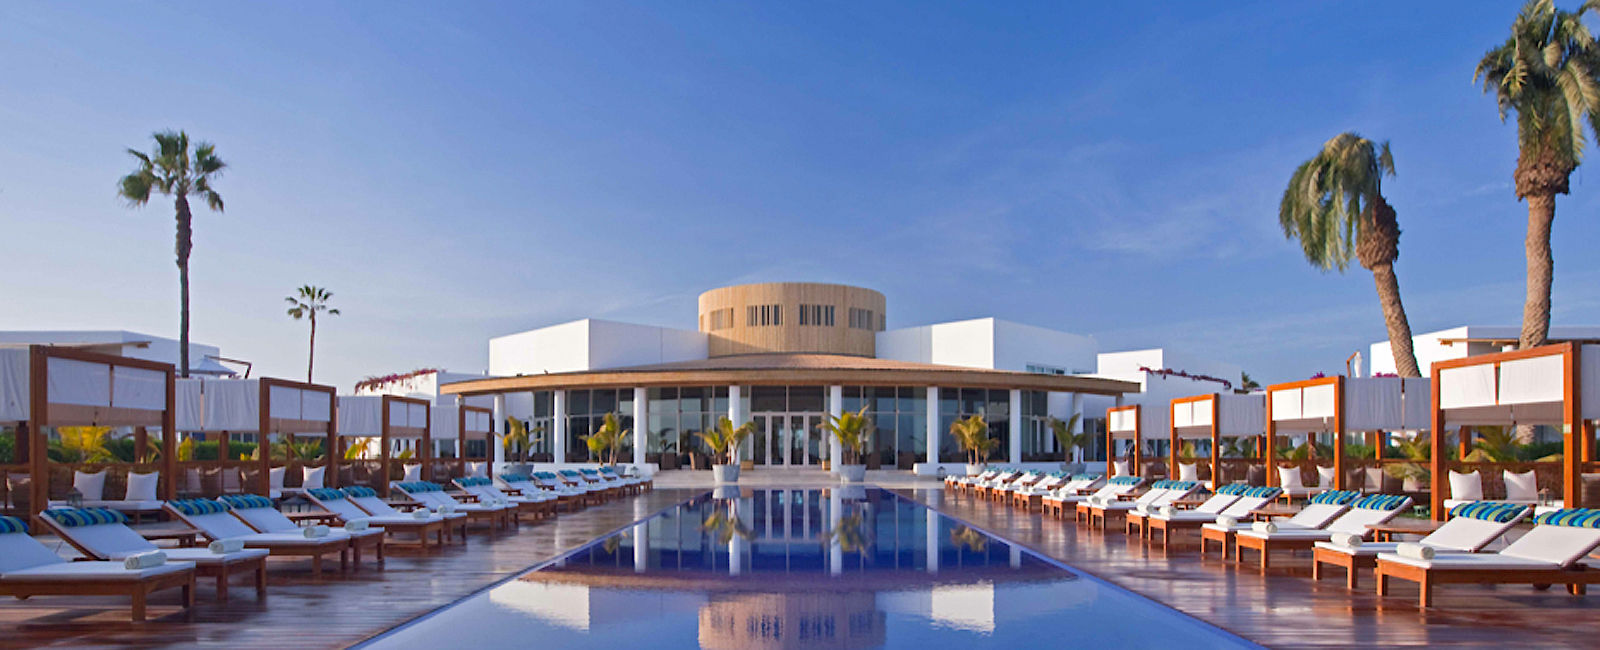 HOTEL TIPPS
 Hotel Paracas, a Luxury Collection Resort 
 Exquisiter Erholungsort mit elegantem Stilmix 